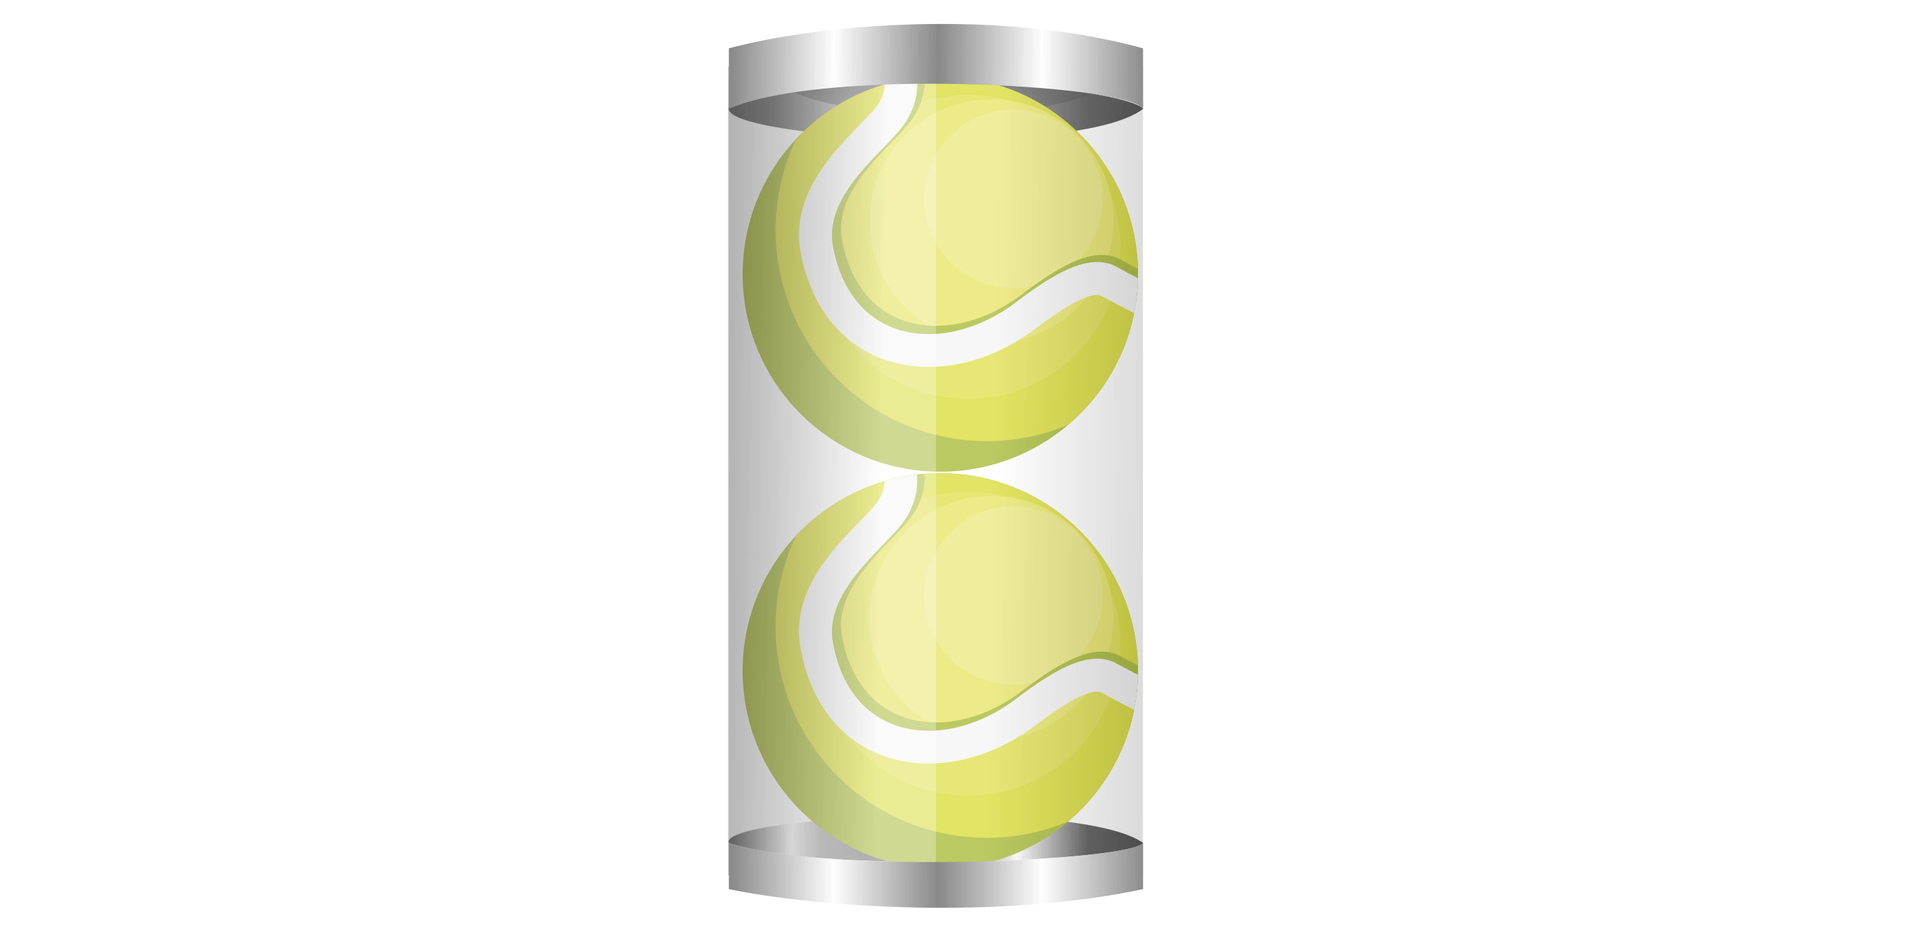 Na ilustracji przedstawiono pojemnik na piłki tenisowe w kształcie walca. W pojemniku znajdują się dwie piłki, ułożone jedna na drugiej styczne do obu podstaw i pola bocznego pojemnika.